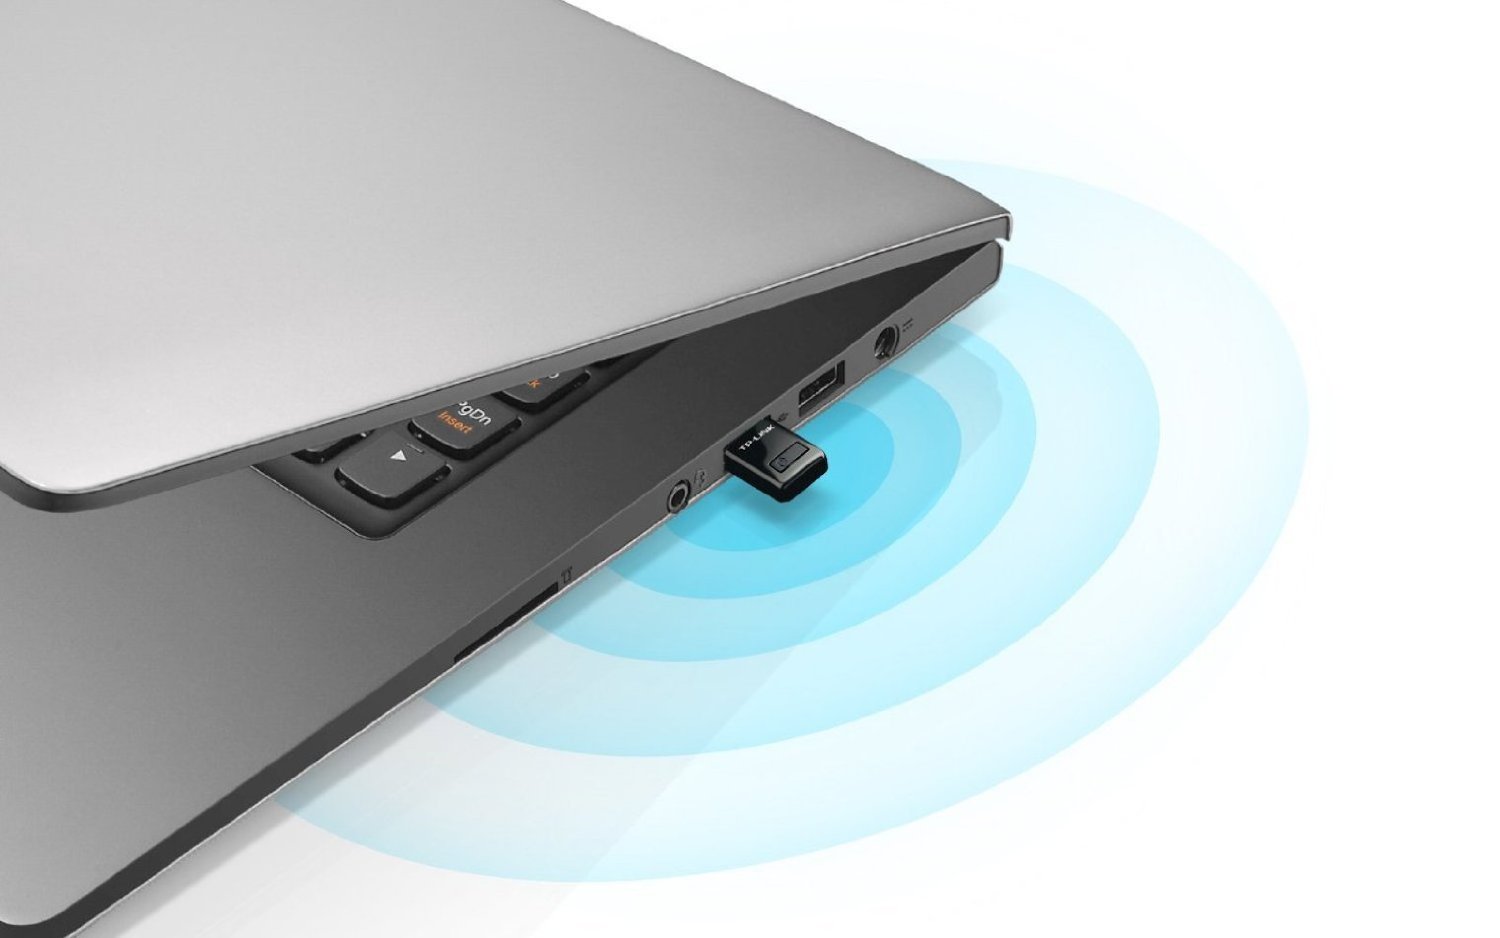 Transforma tu PC en un amplificador de señal wifi casero para compartir Internet, usando un adaptador USB